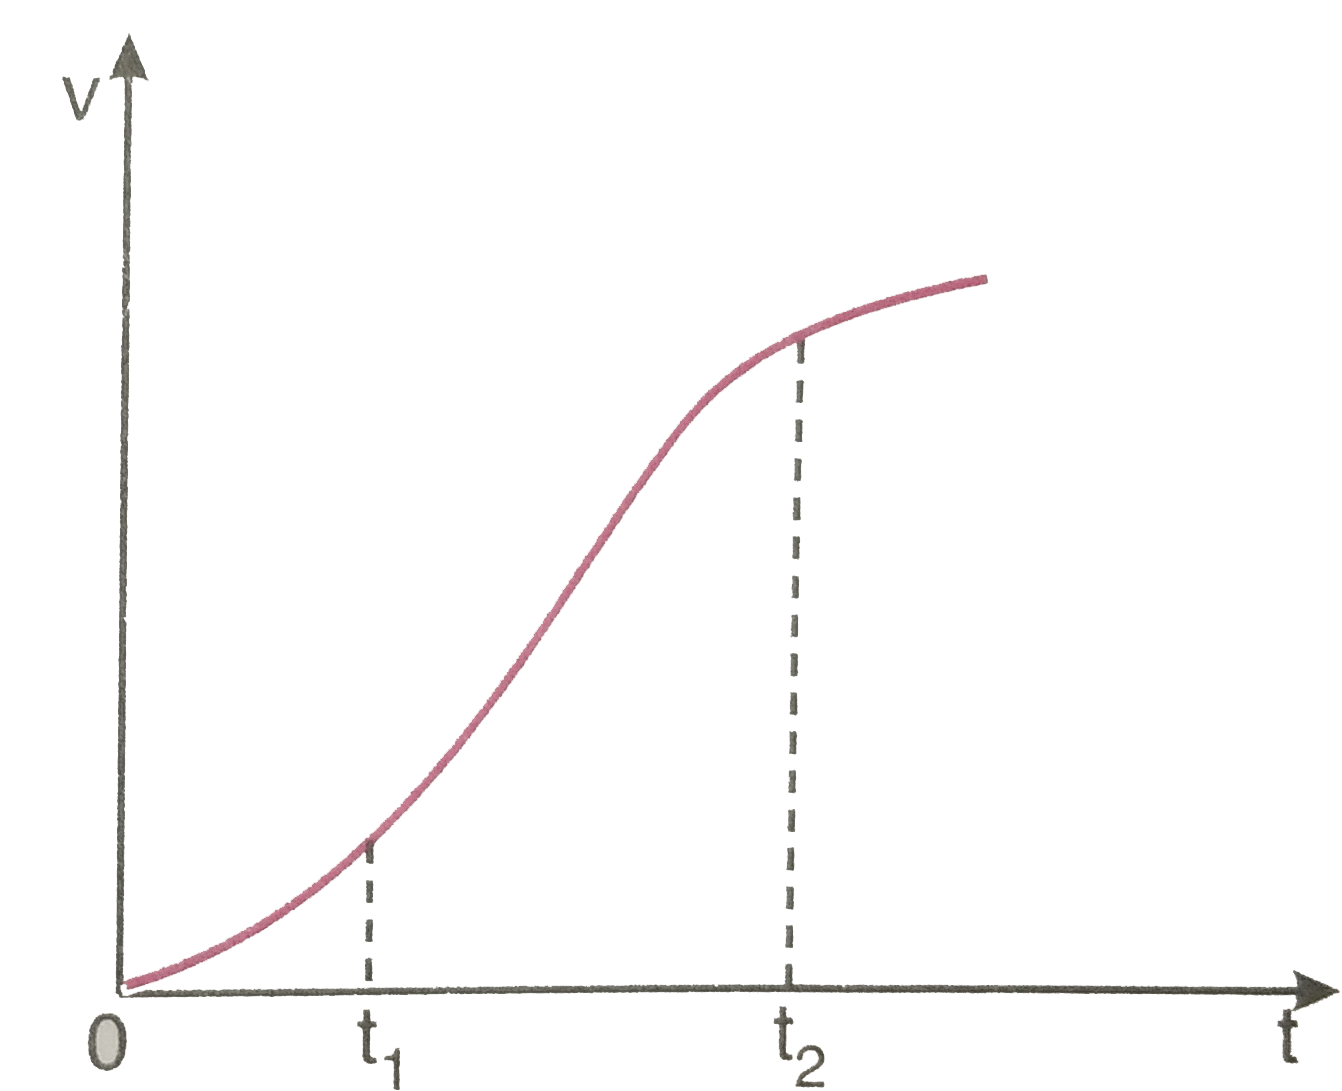 एक विमीय गति में किसी का वेग - समय ग्राफ चित्र 3.62 में दिखाया गया है नीचे दिए सूत्रों में t(1) से t(2) तक के समय अंतराल की अवधि में कण की गति का वर्णन करने के लिए कौन-से सूत्र सही है   v(